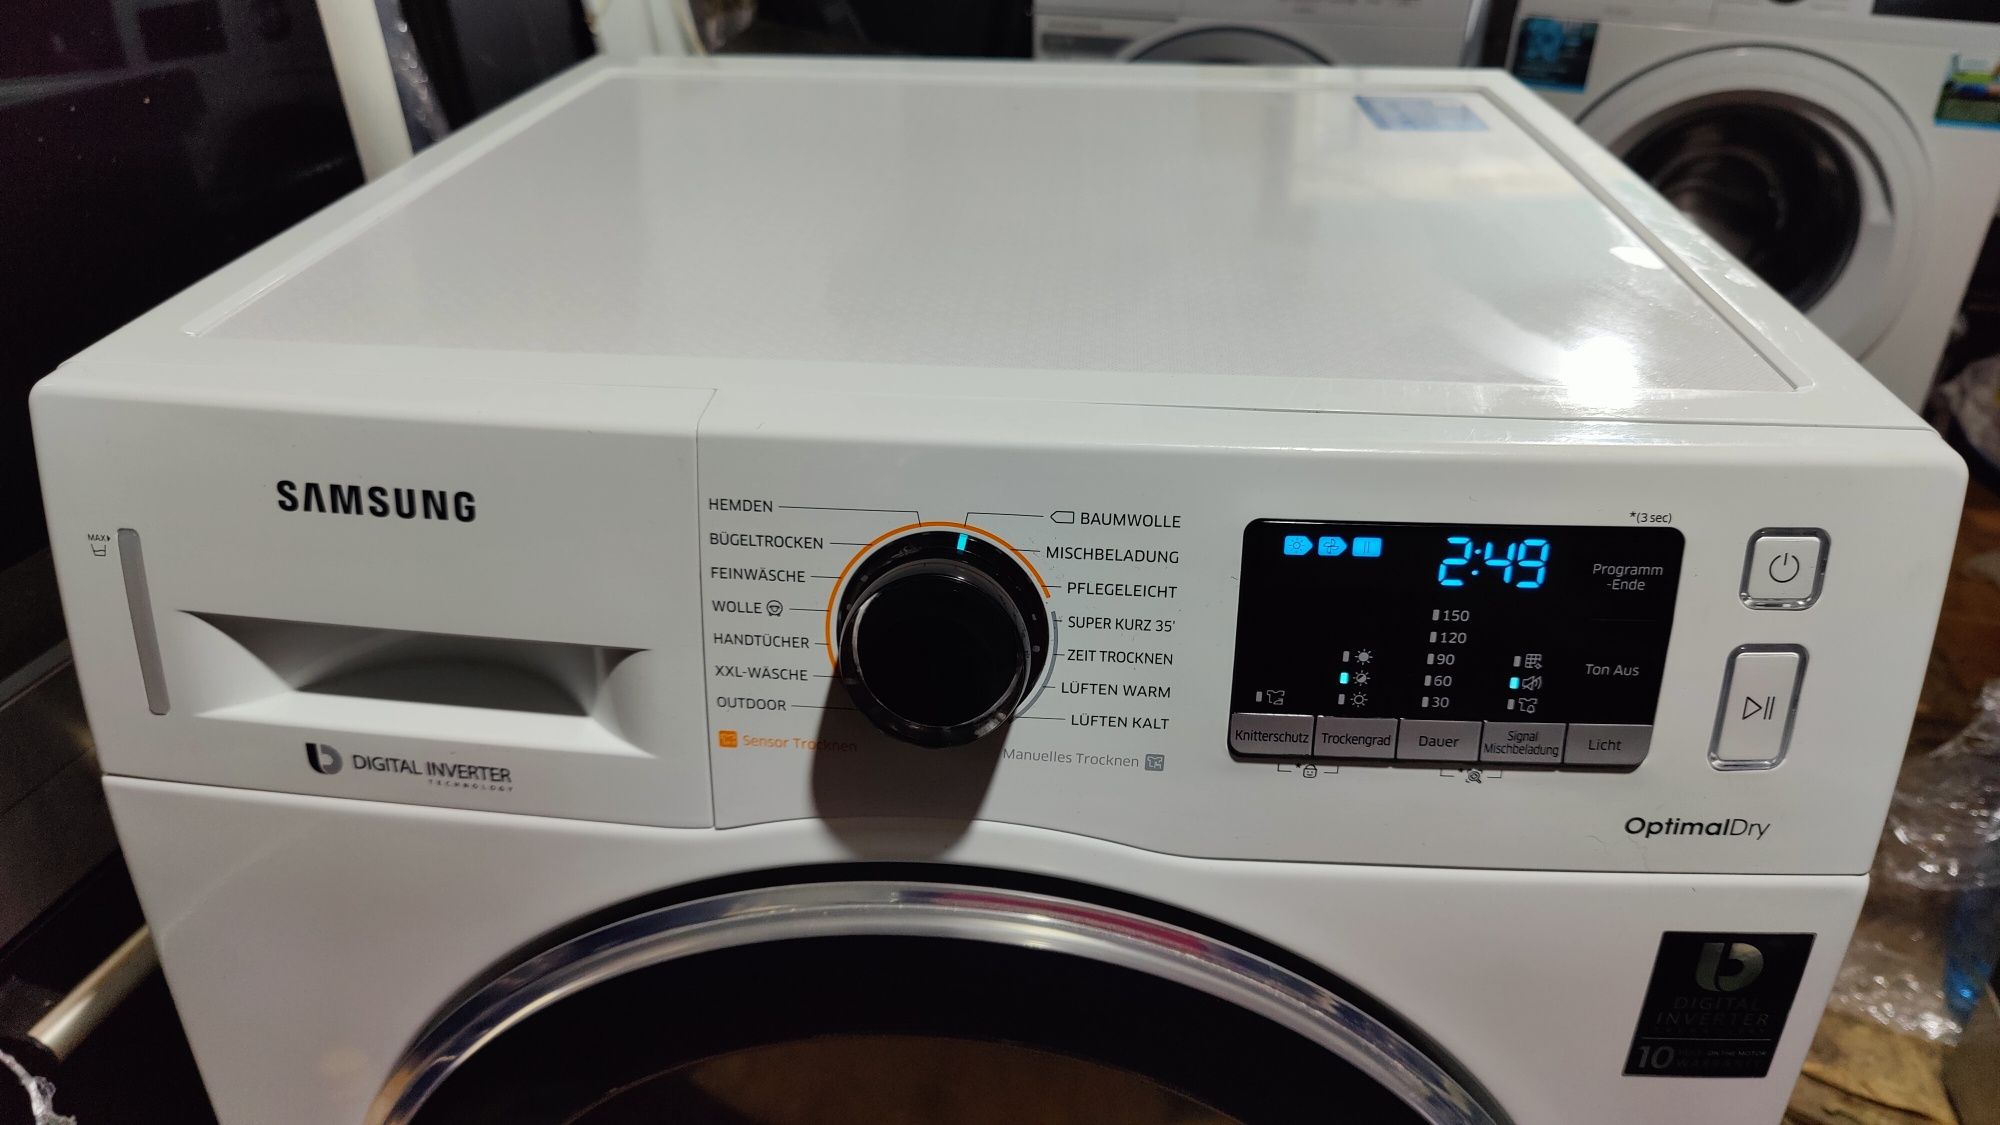 Сушильна машина Samsung Optimal Dry. 2018 рік.